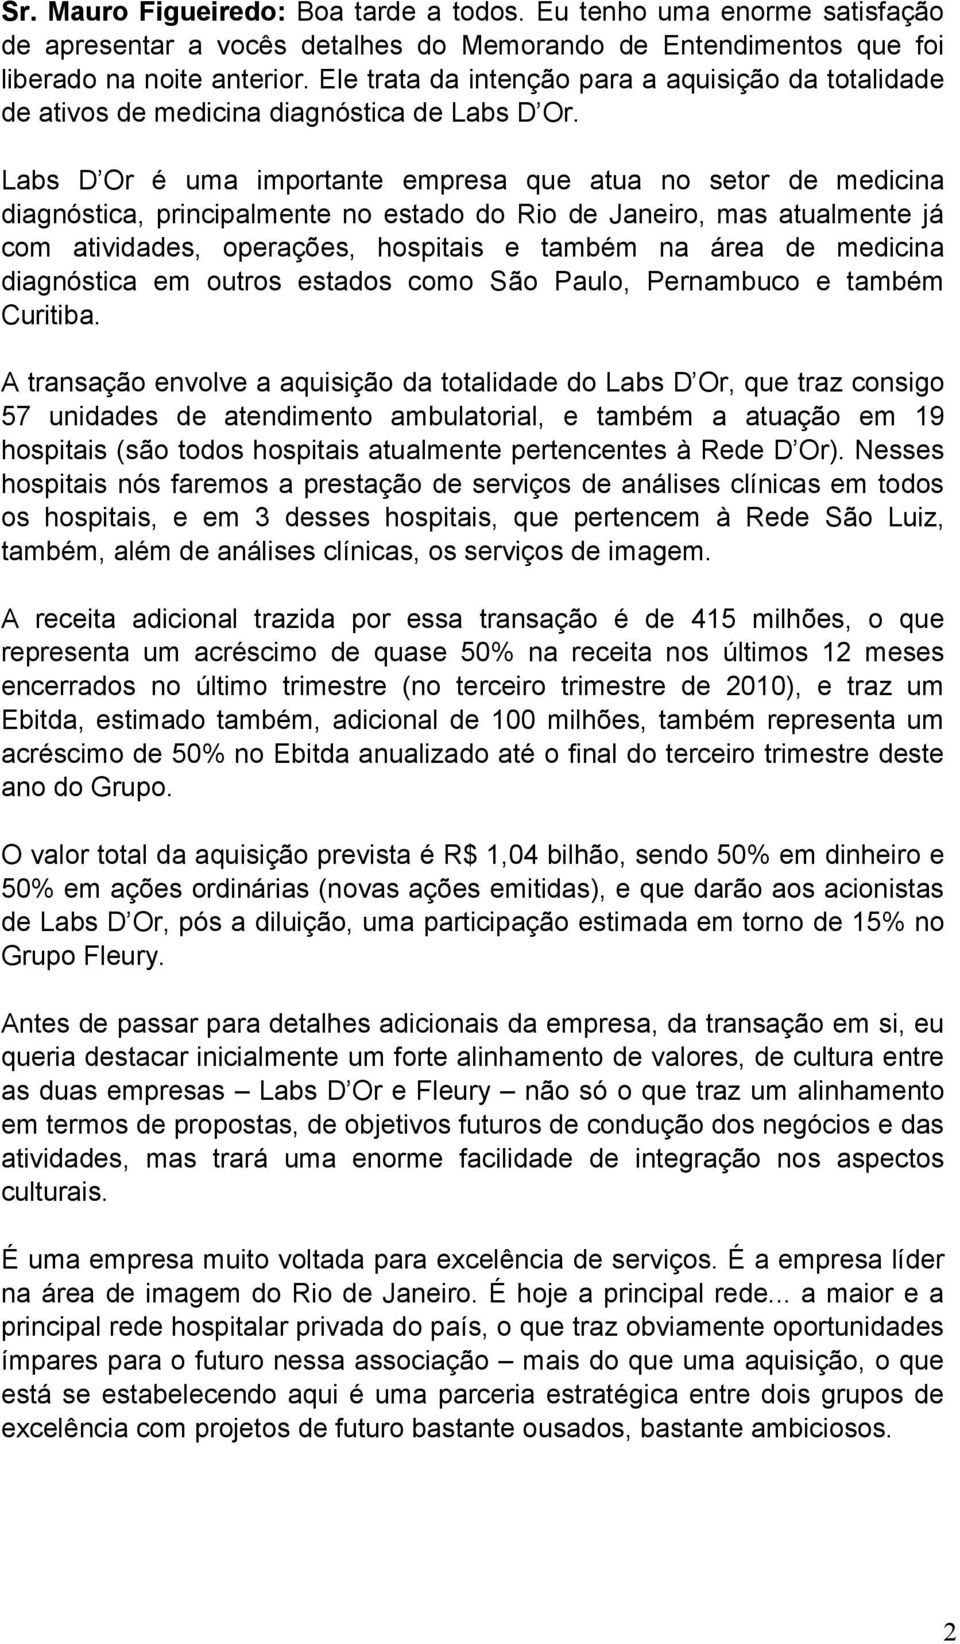 Labs D Or é uma importante empresa que atua no setor de medicina diagnóstica, principalmente no estado do Rio de Janeiro, mas atualmente já com atividades, operações, hospitais e também na área de